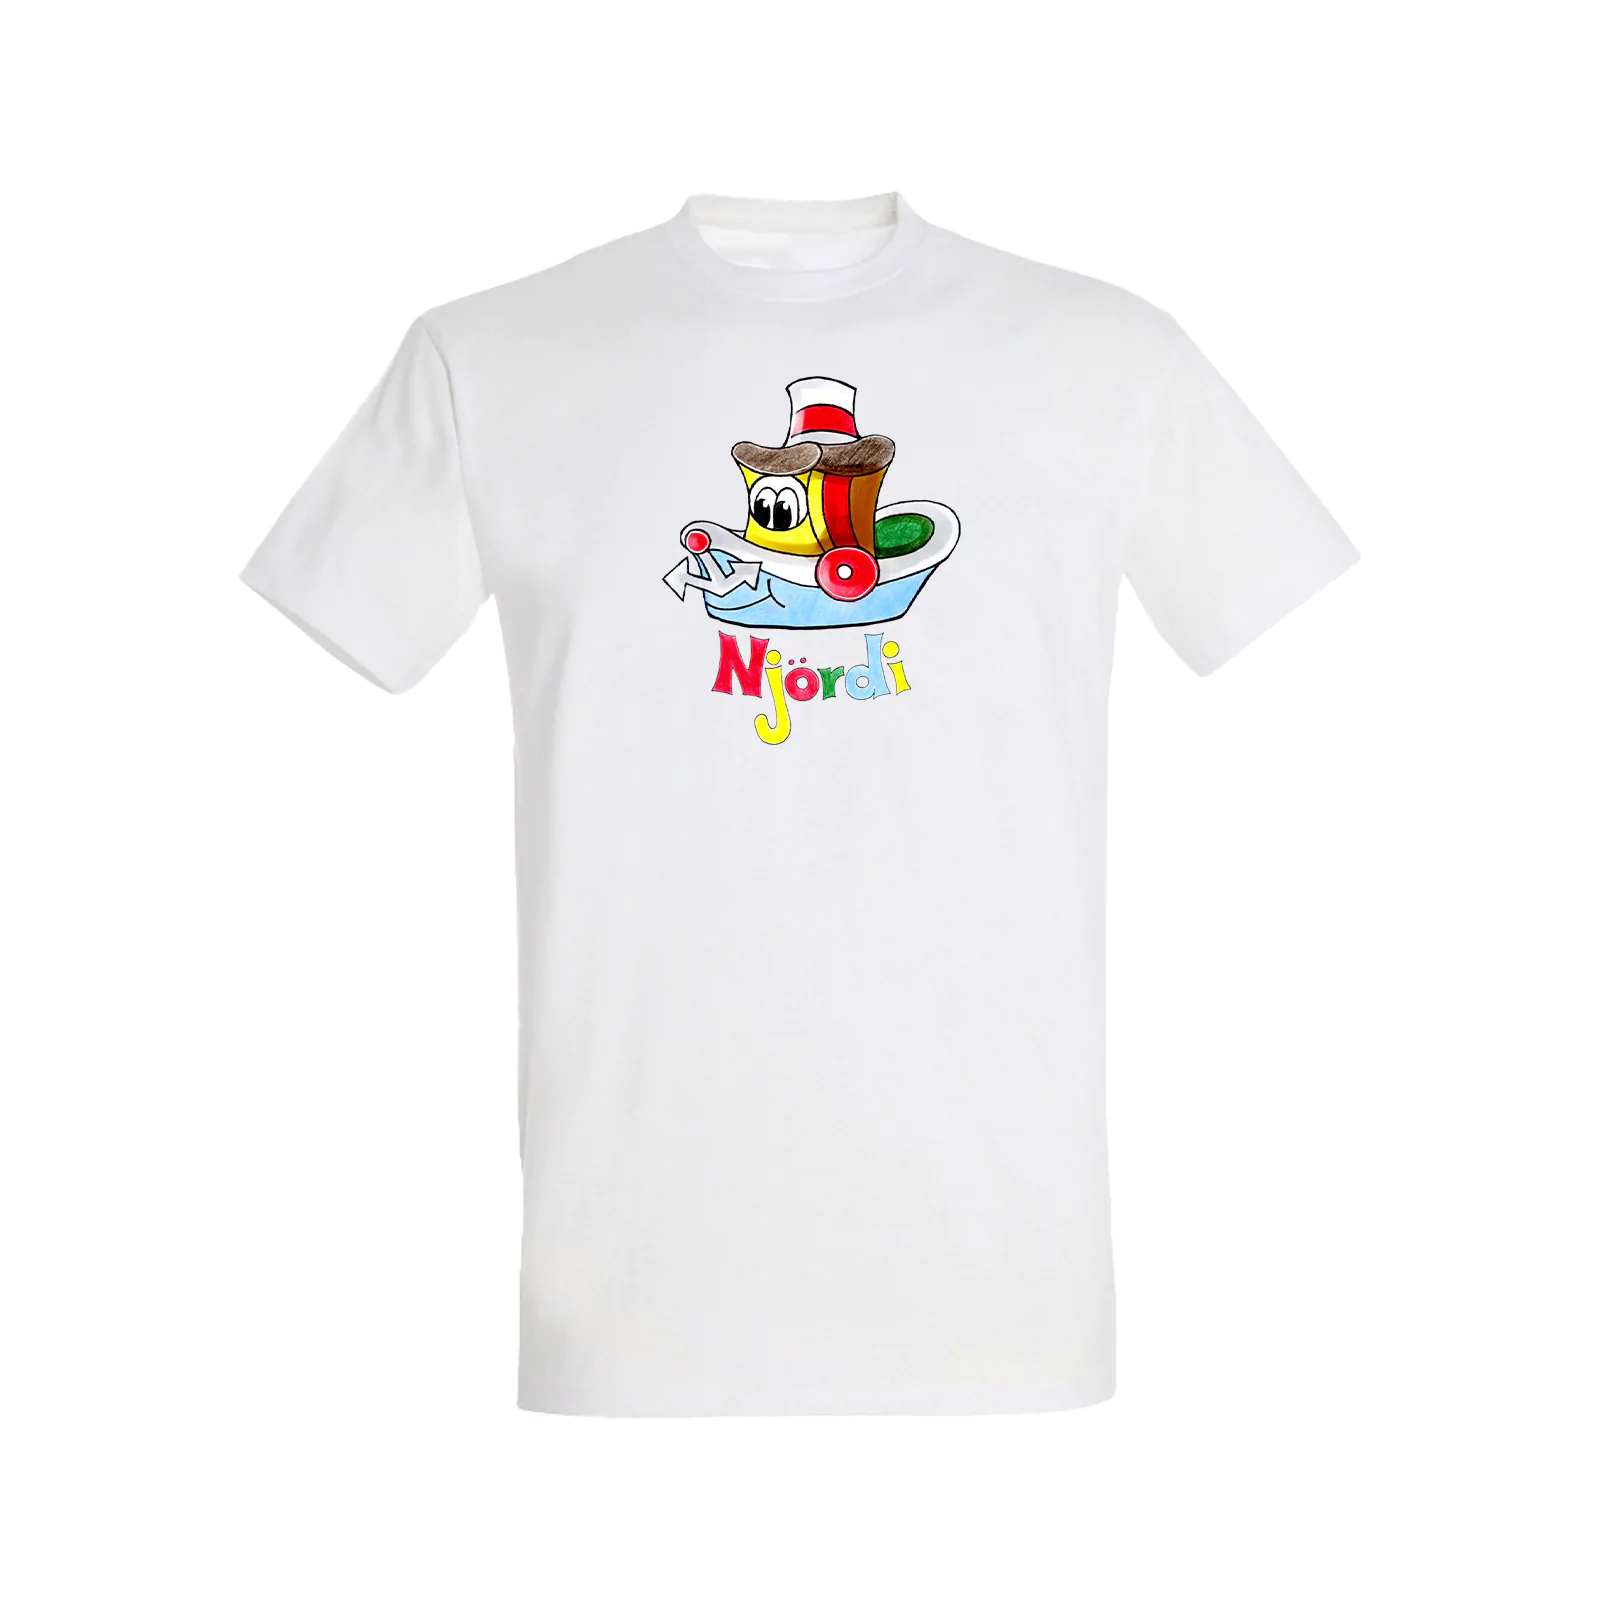 Smarte Strolche Shop Njoerdi Kinder Shirt1